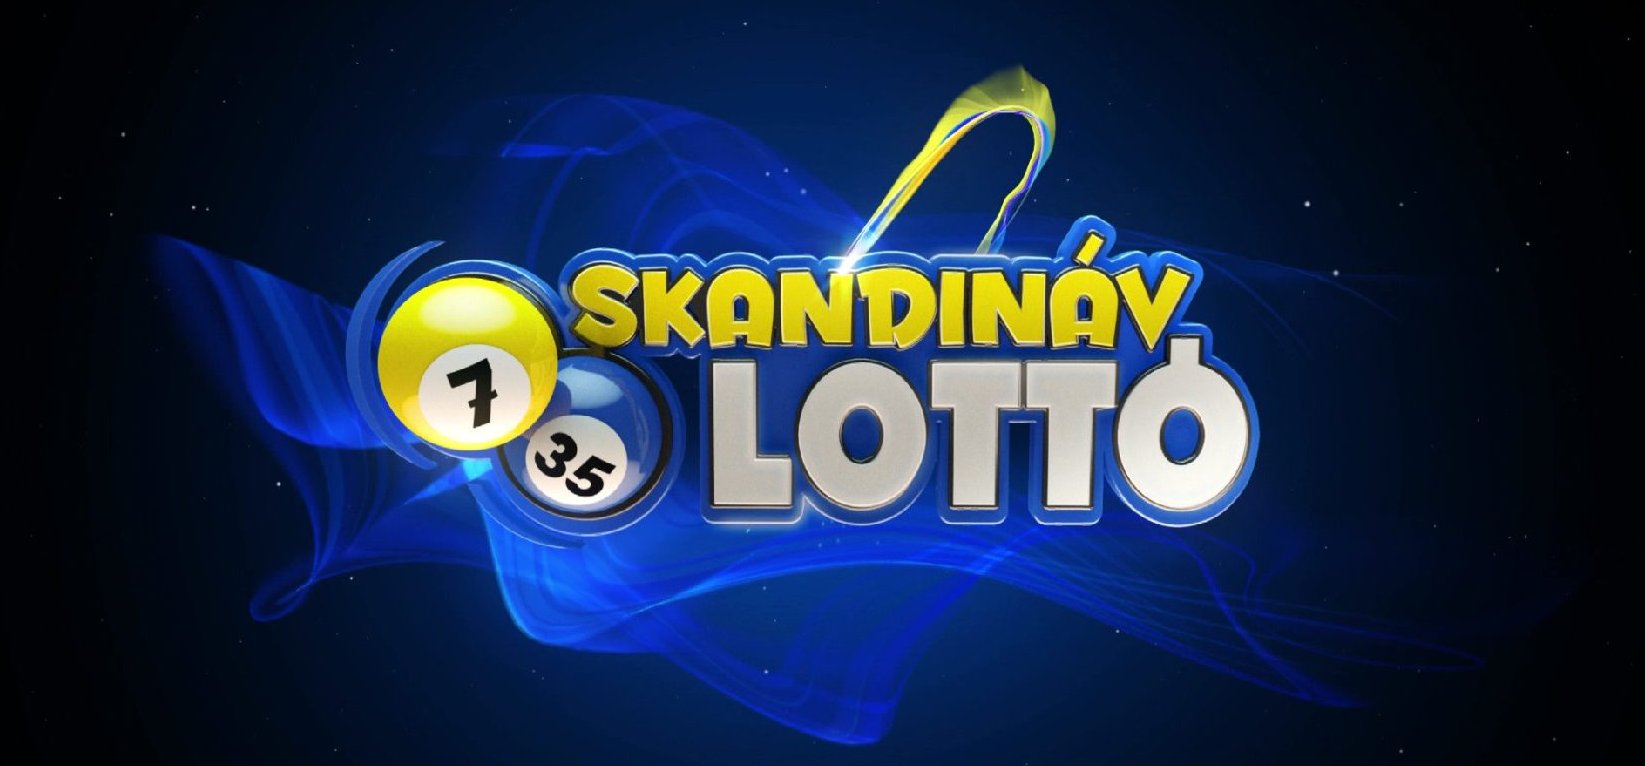 Skandináv lottó: sok magyar zsebre vágná a 105 millió forint – mutatjuk, hogy milyen nyerőszámokat kellett eltalálni hozzá